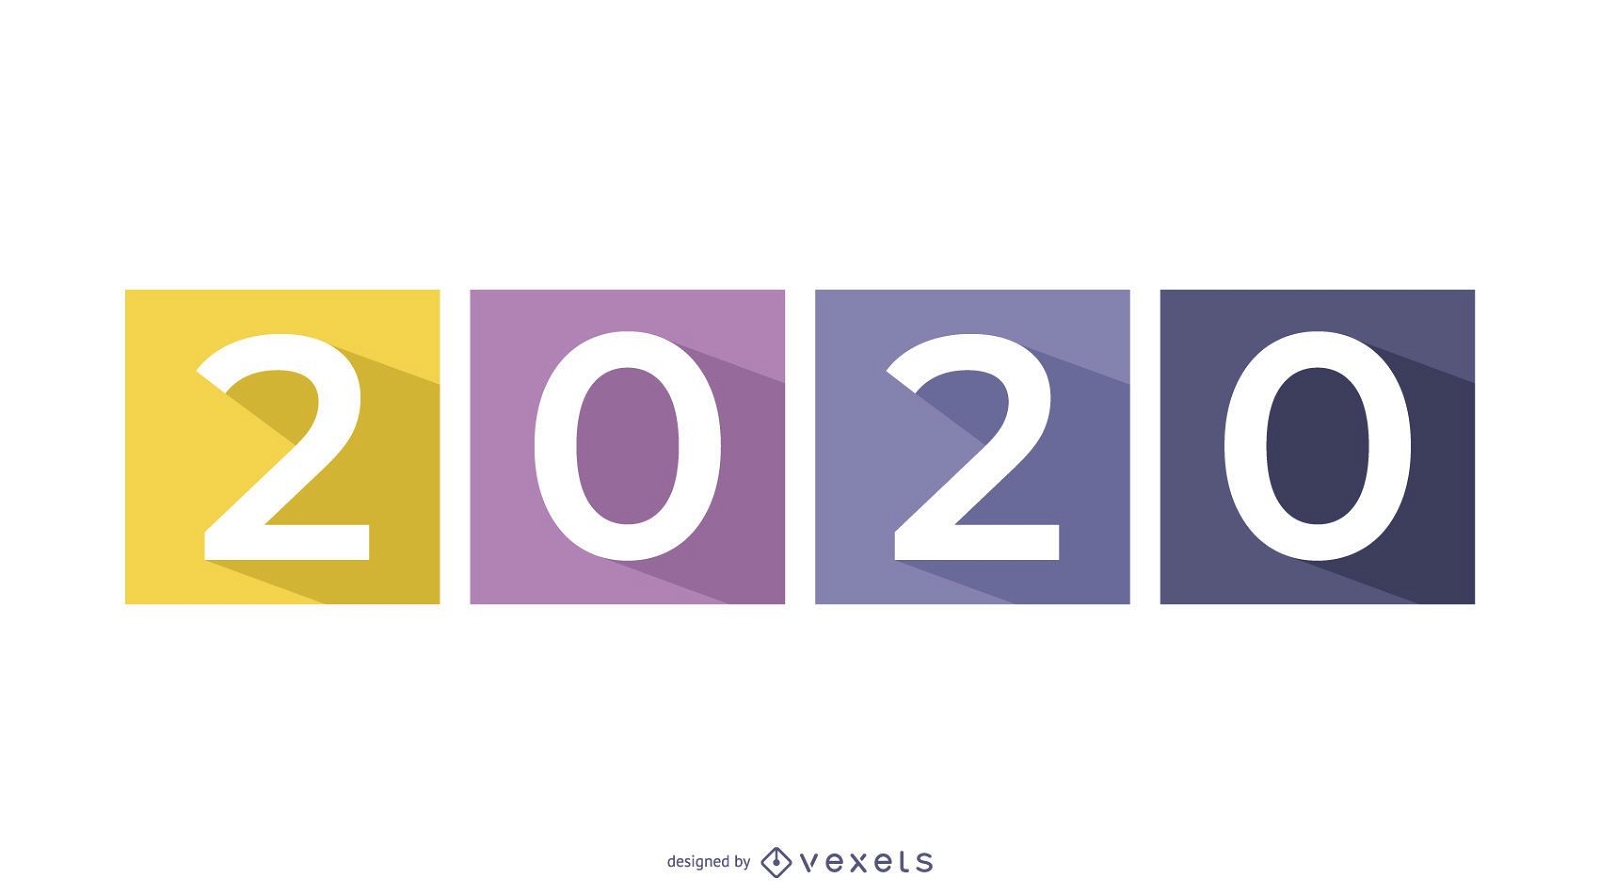 Long Shadowed 2015 em quadrados coloridos separados